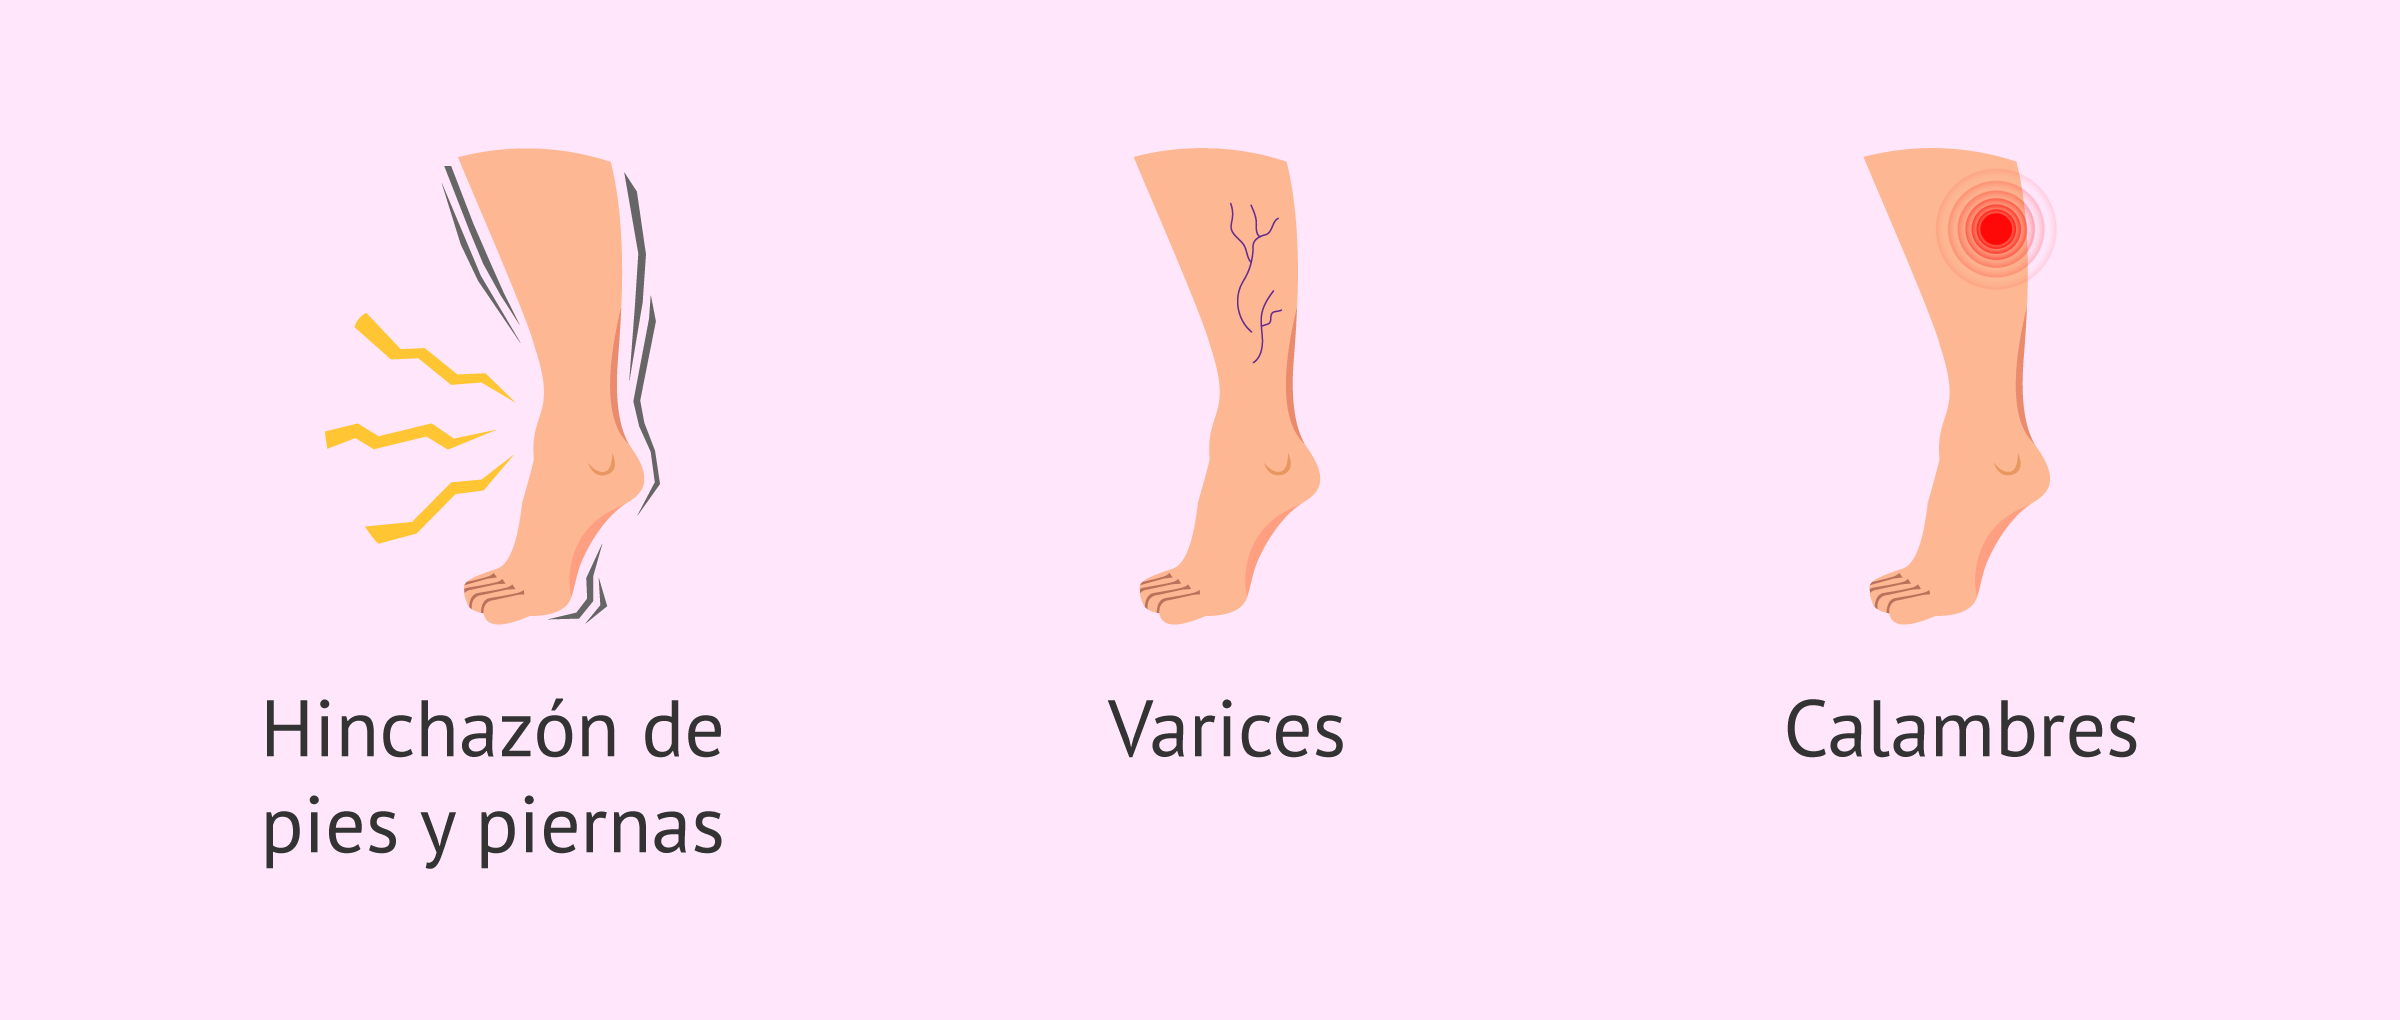 Molestias comunes en las piernas durante el embarazo